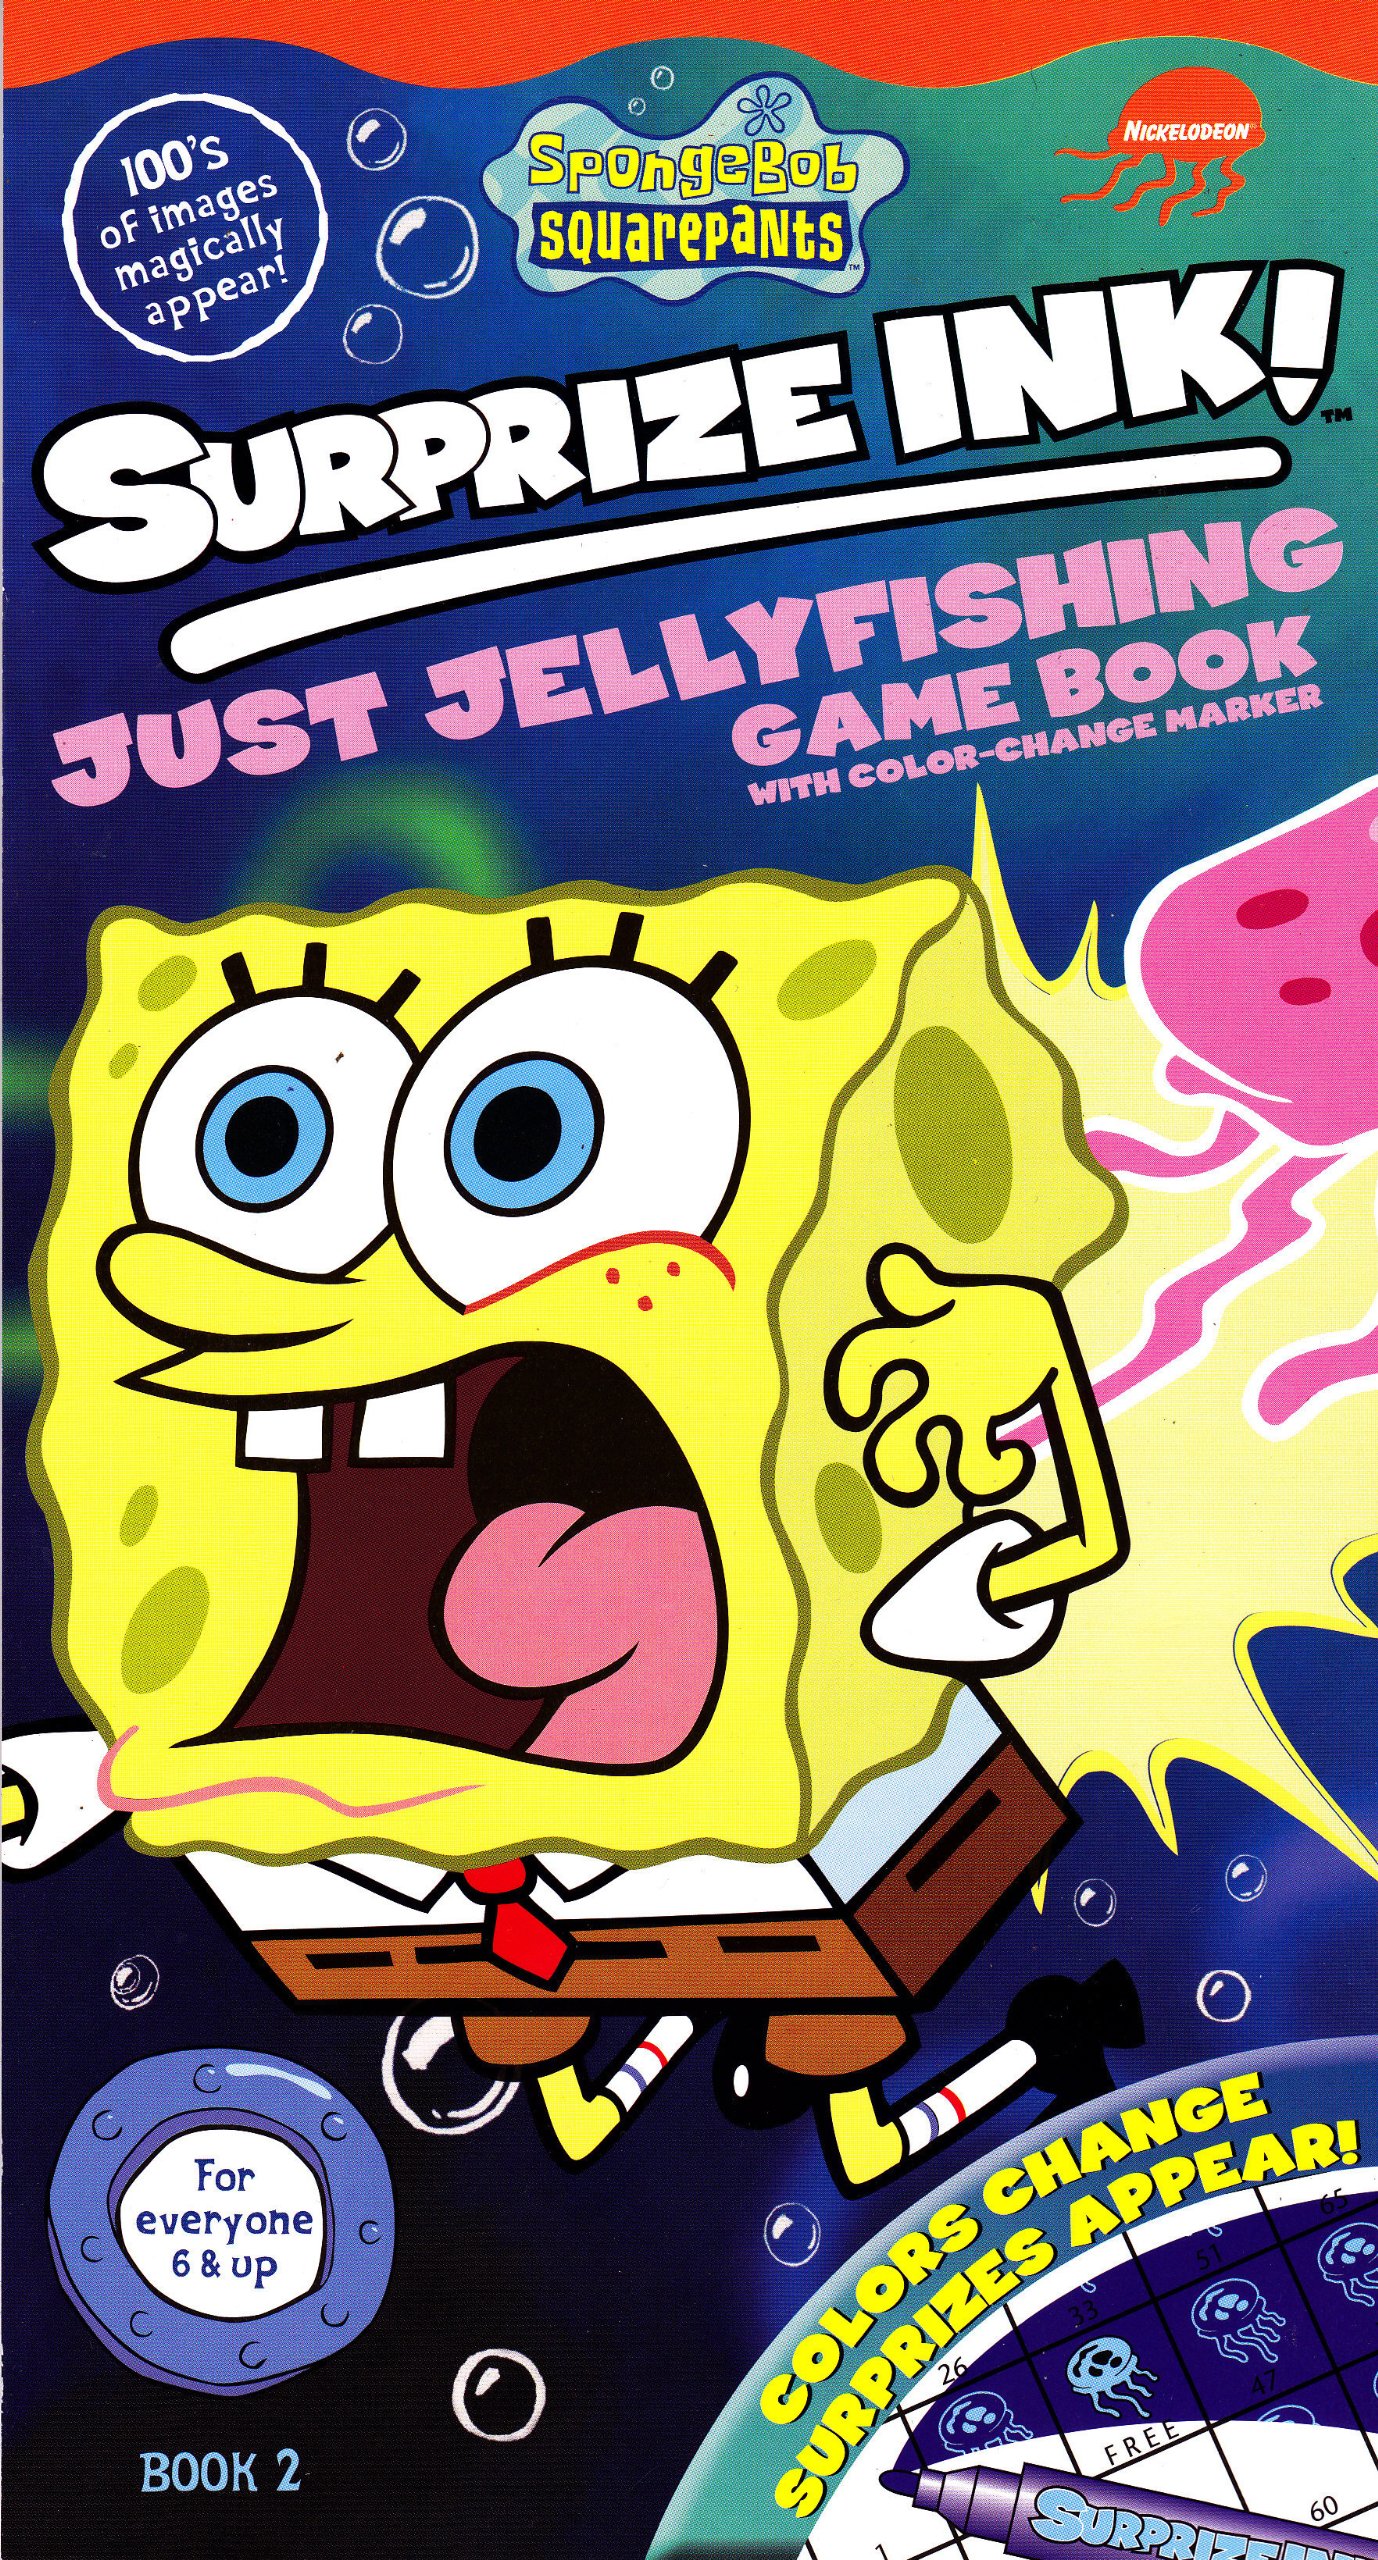 Coloring book  activity book:SpongeBob SquarePants Jellyfishing